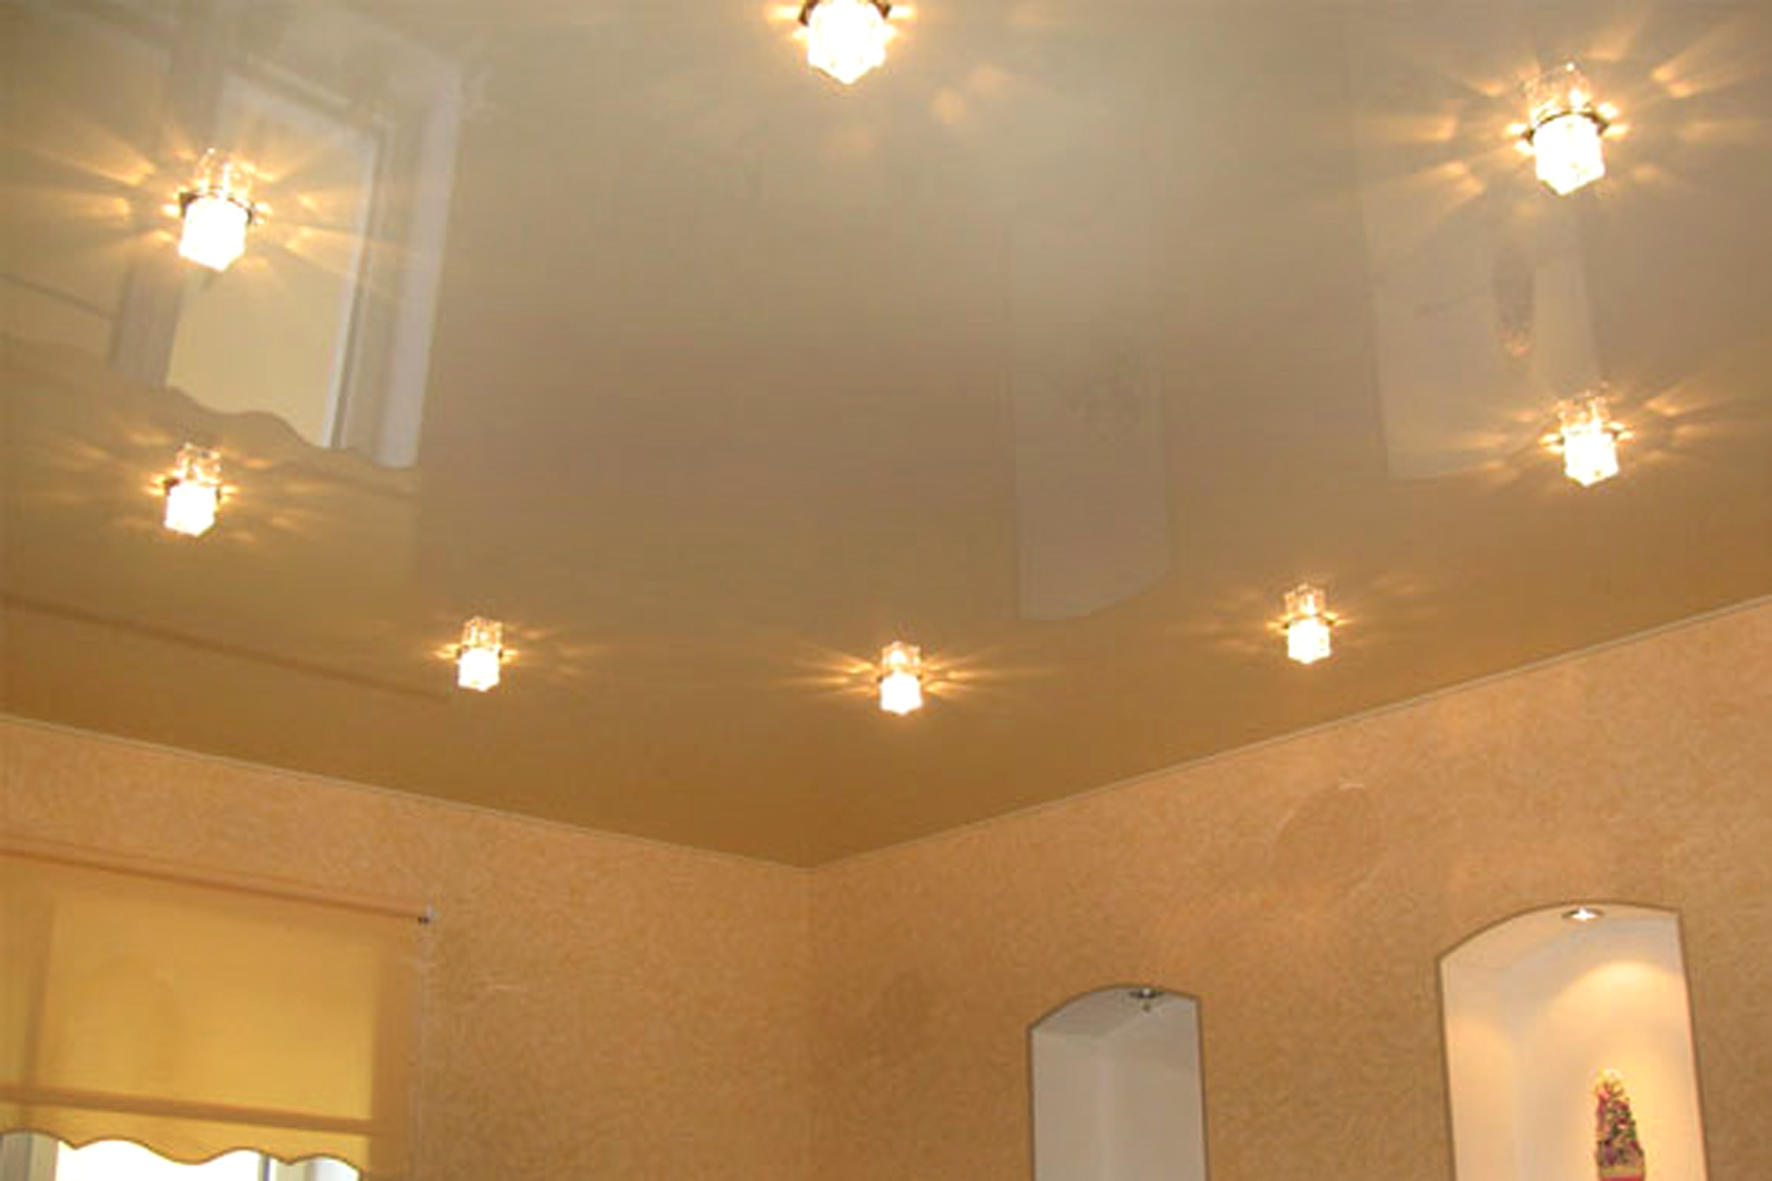 светильники в натяжной потолок в комнату